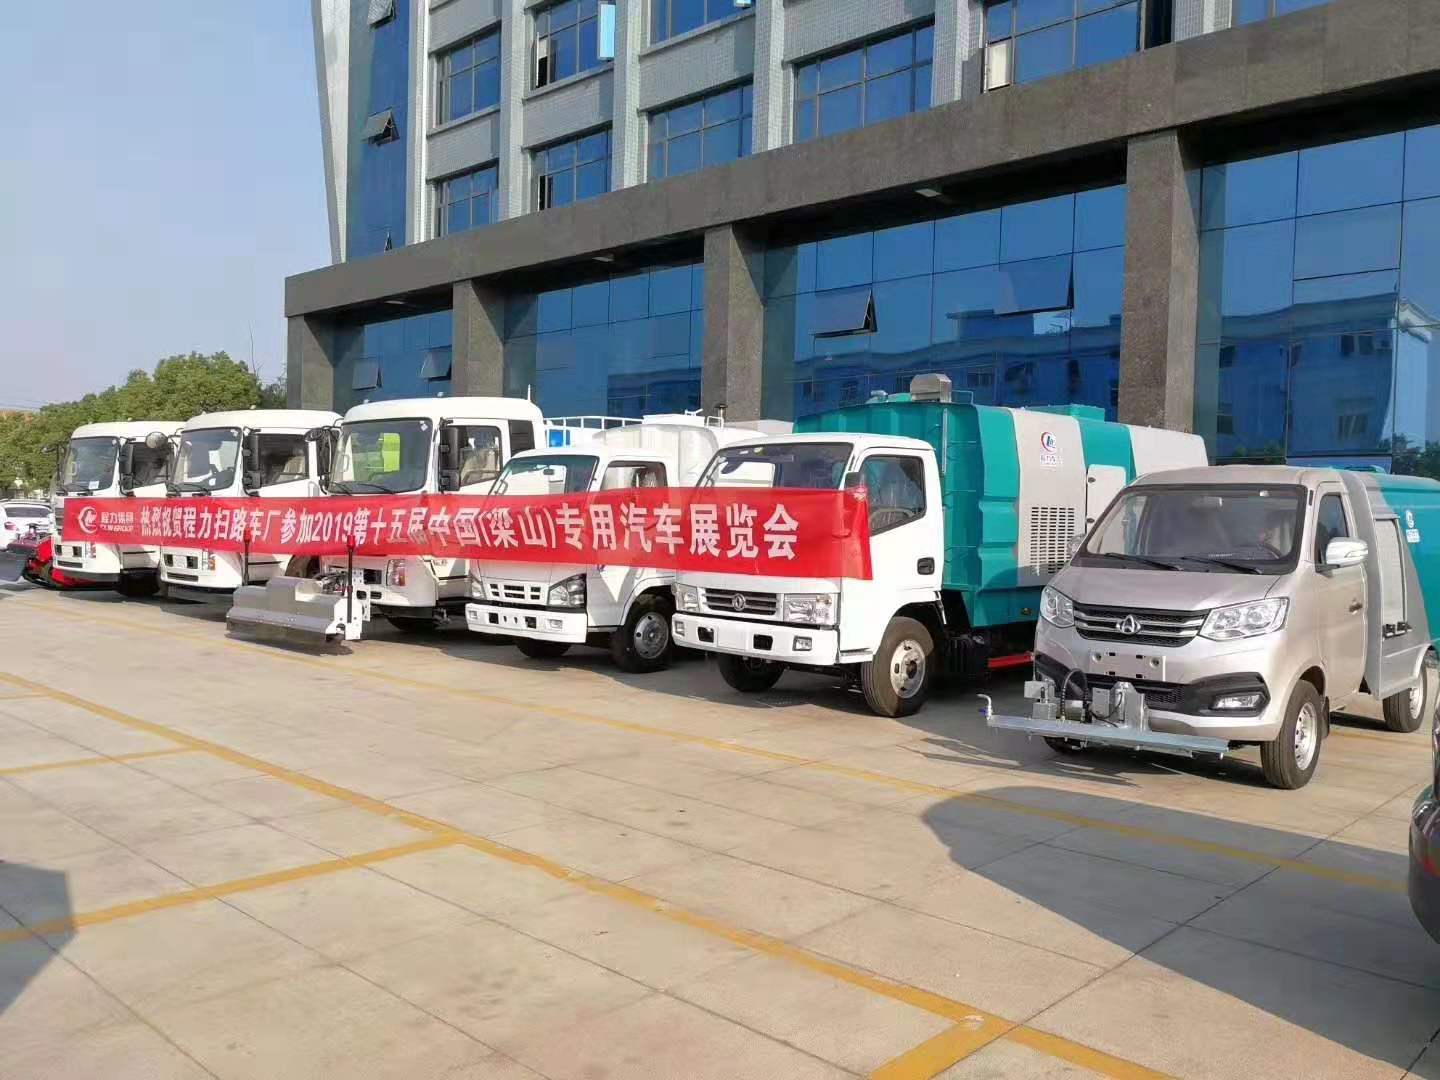 j9.com(中国区)官方网站扫路车、高压清洗车、洗扫车、干扫车